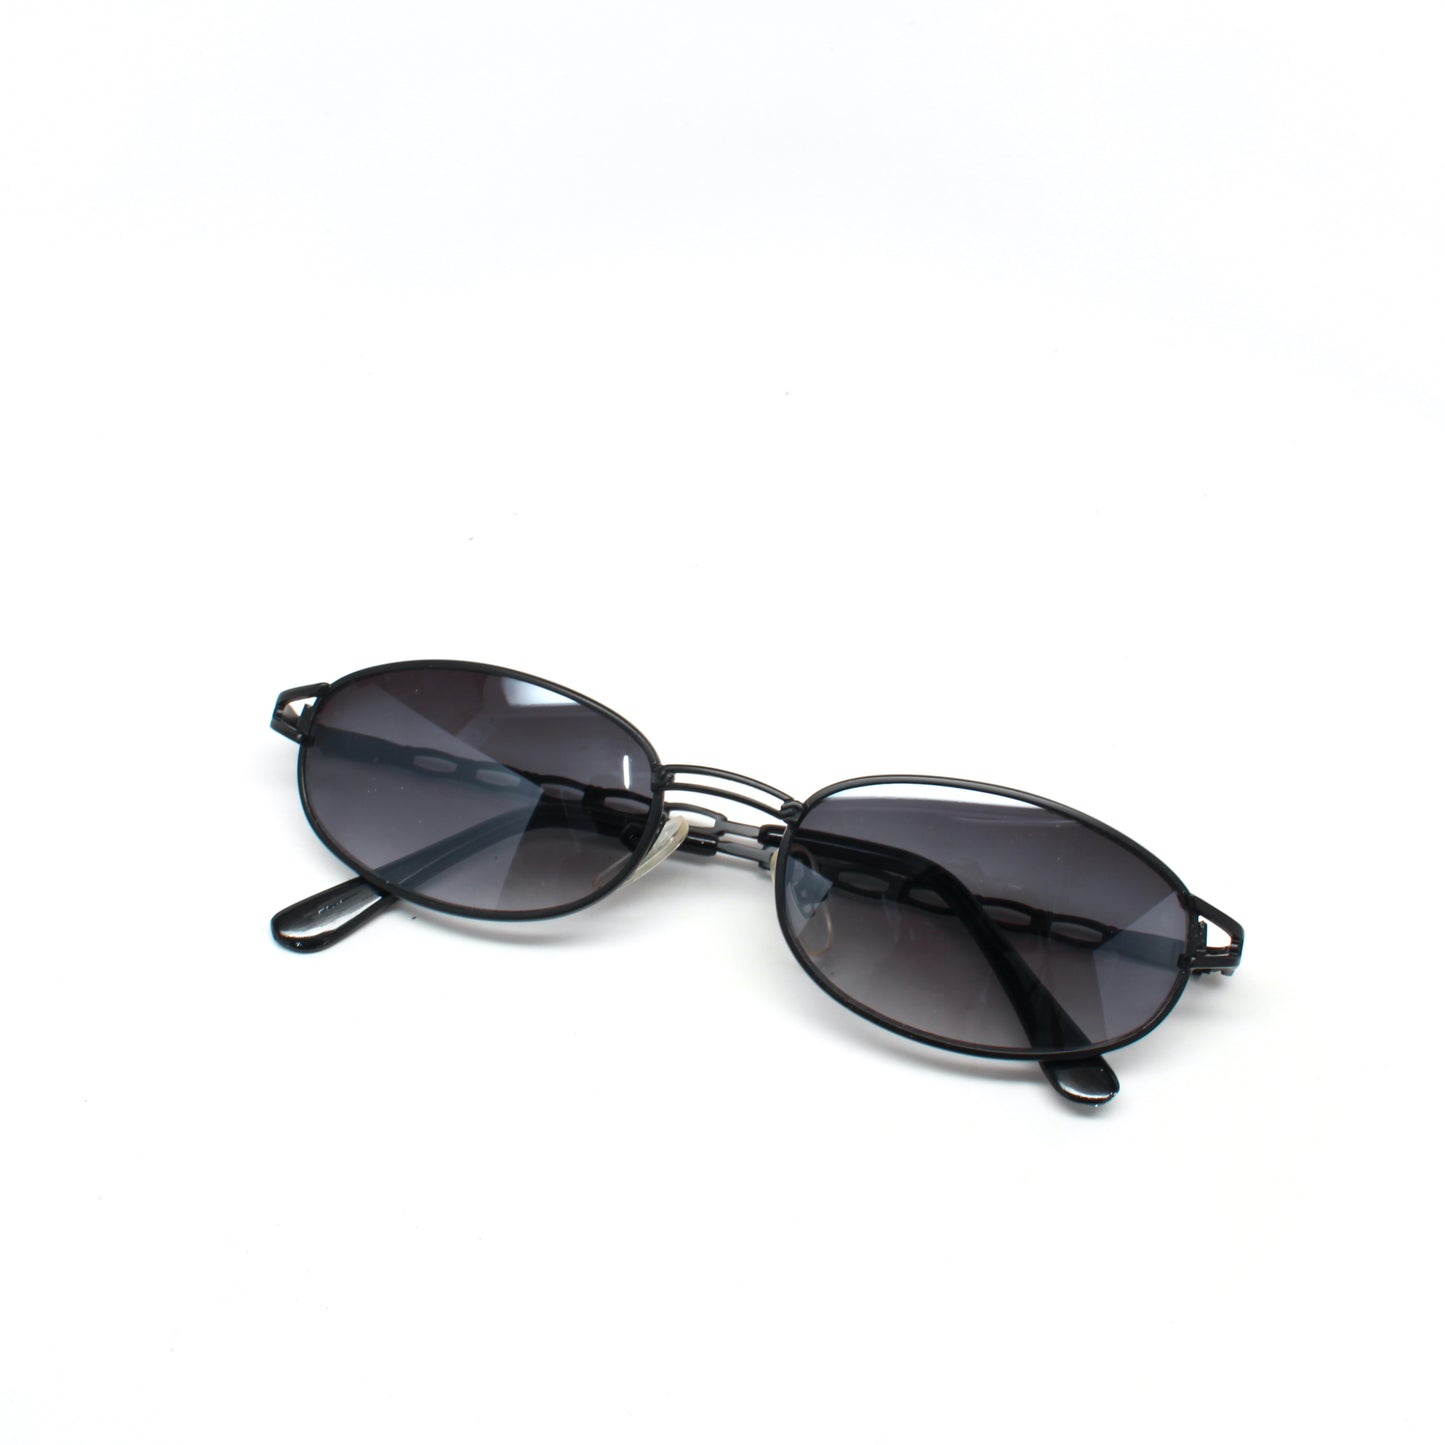 Vintage MINI Small Size 1997 Neo Matrix Style Wire Frame Sunglasses - Black